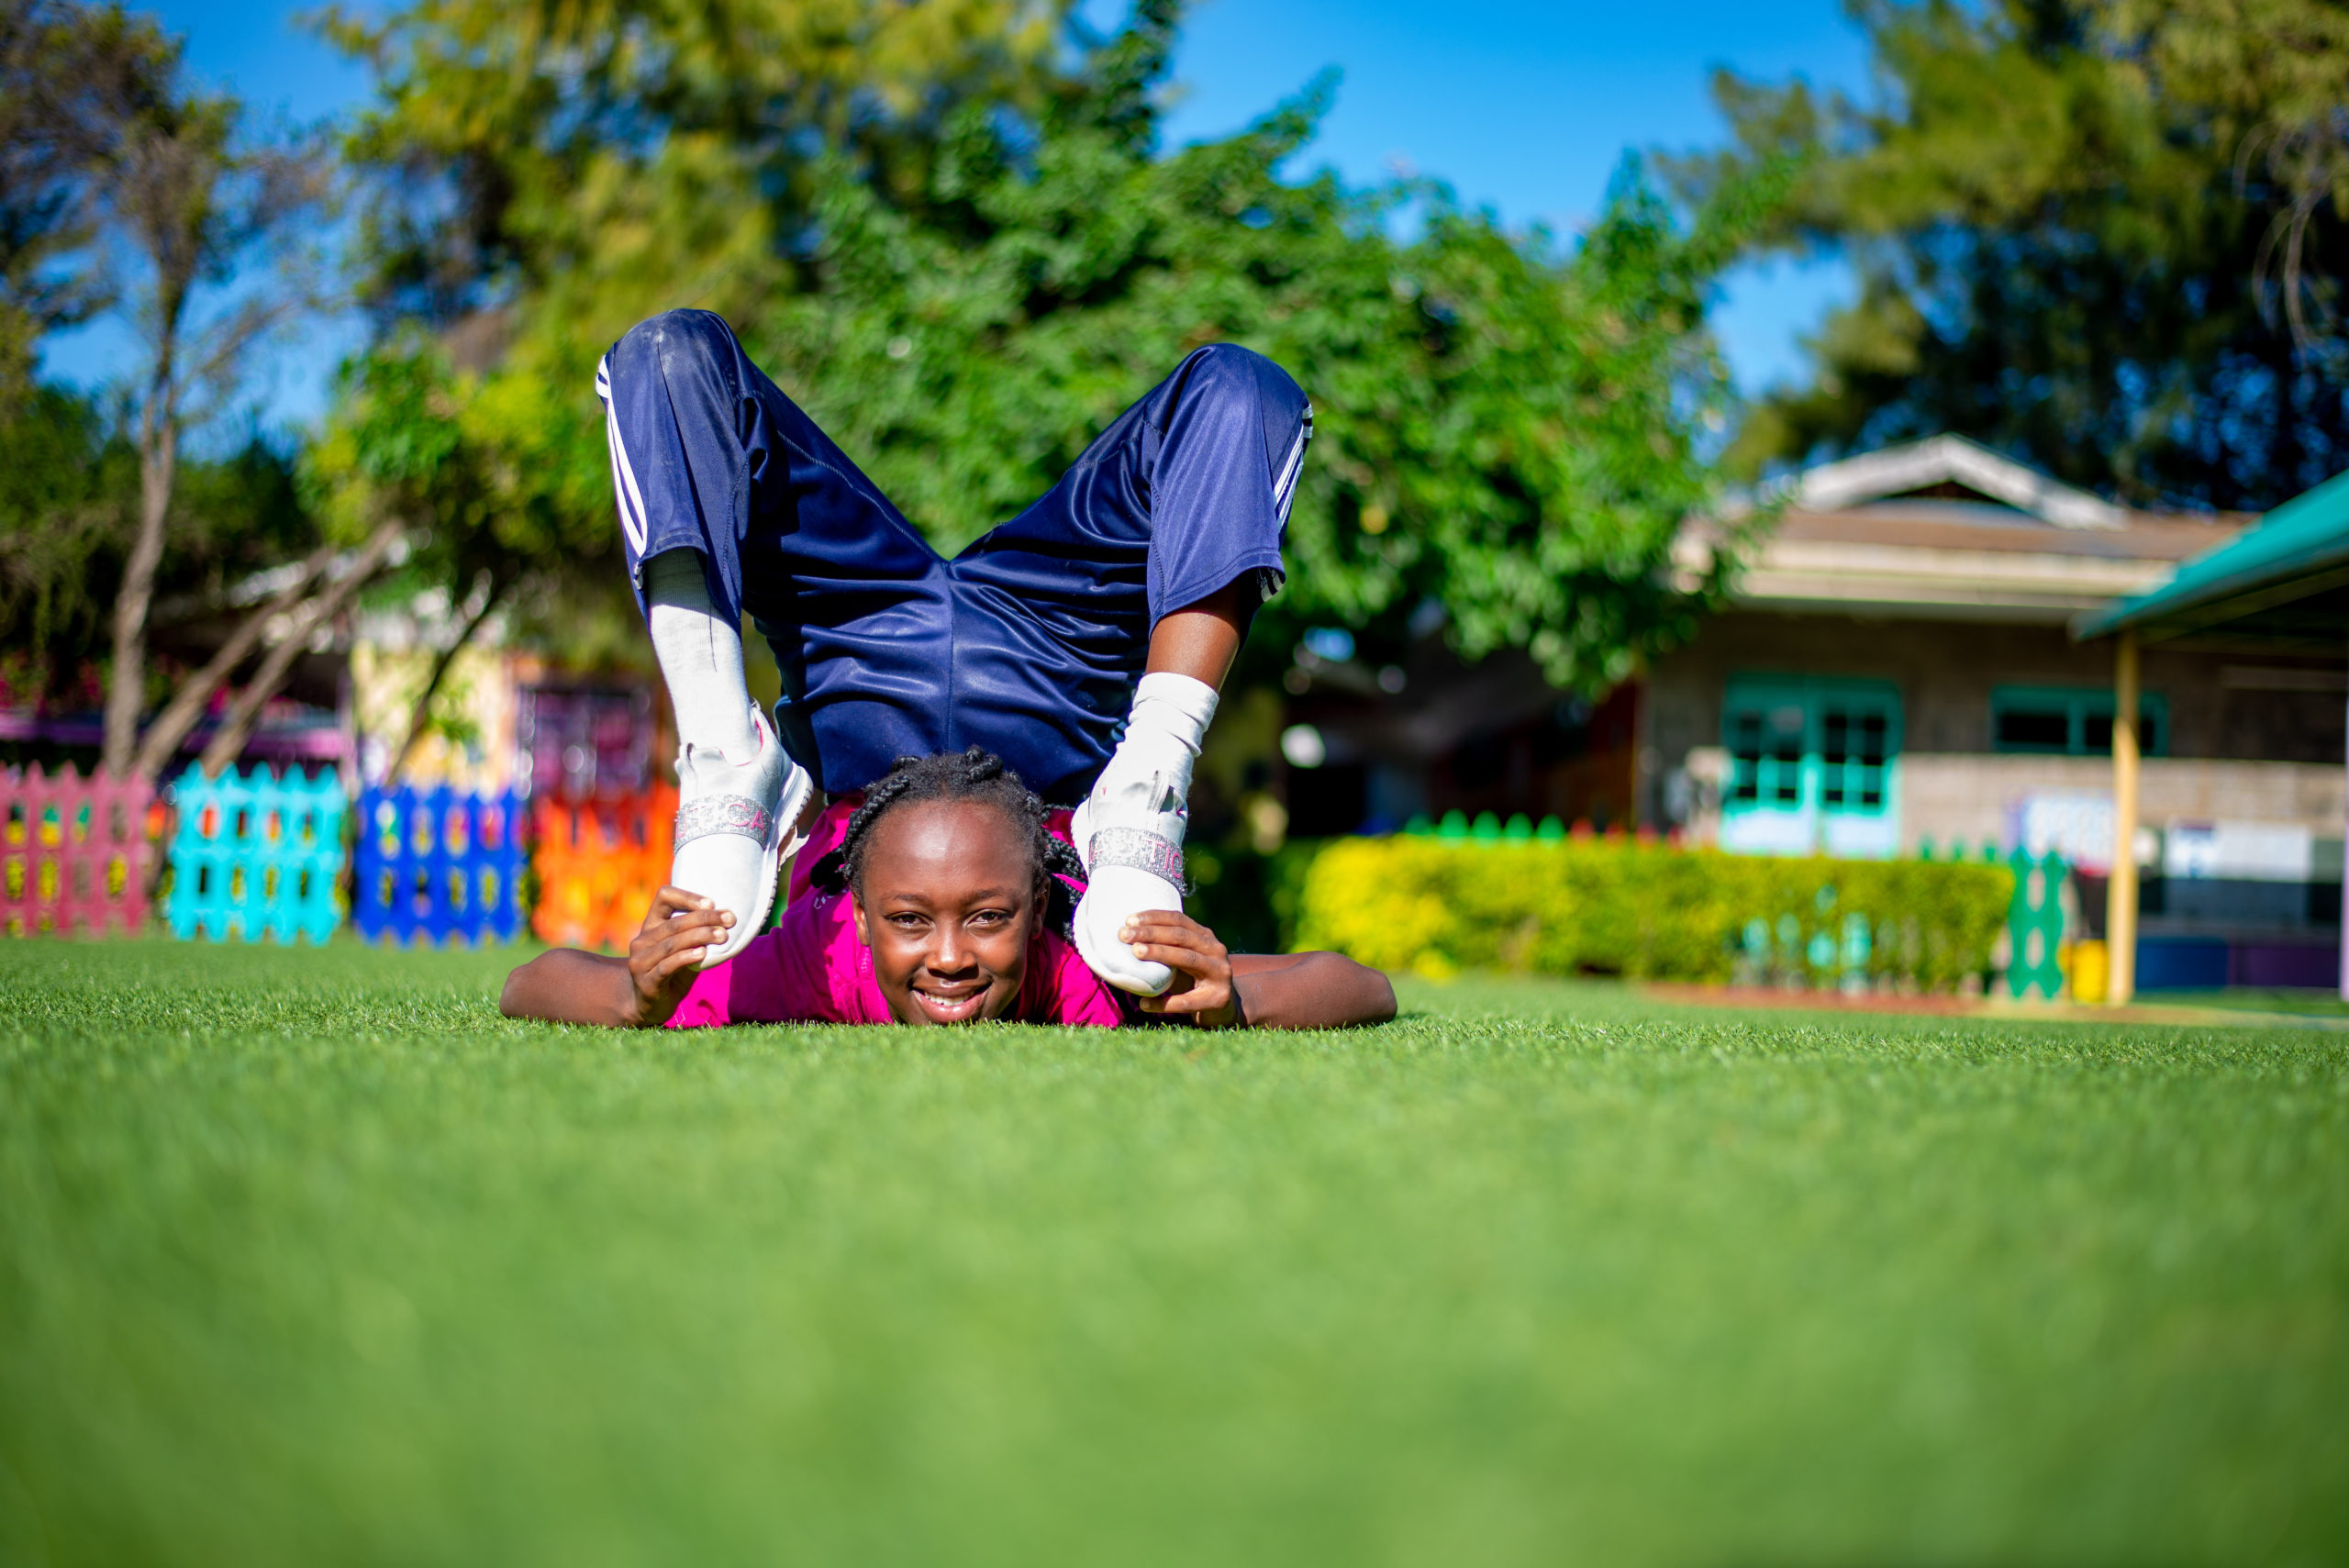 Riara Springs Primary School pupil showcasing acrobatics in track suit